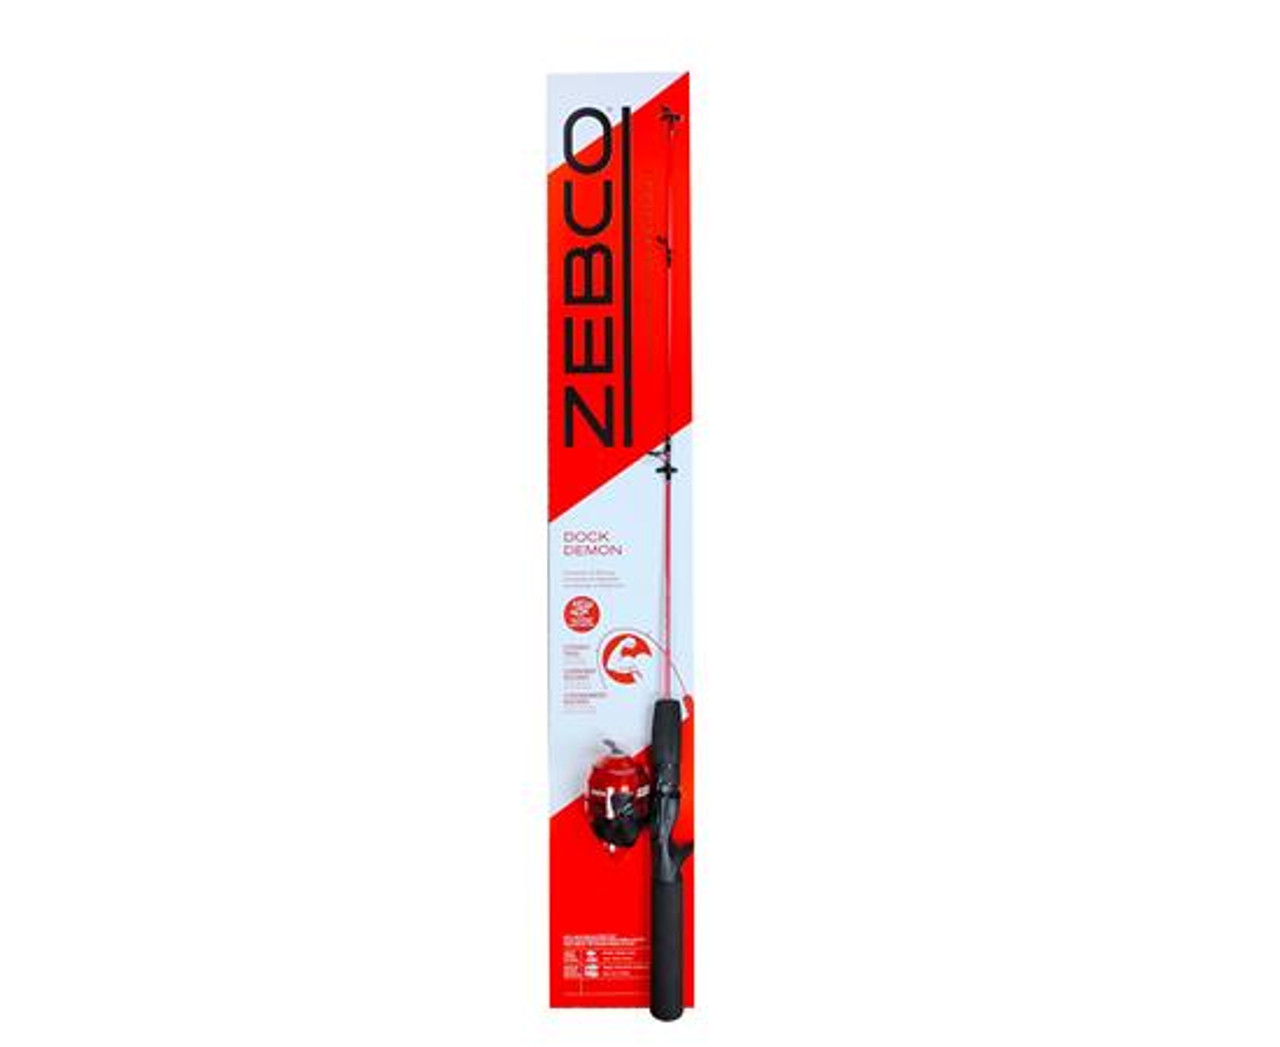 Zebco Omega Pro 2-Piece Spincast Combo